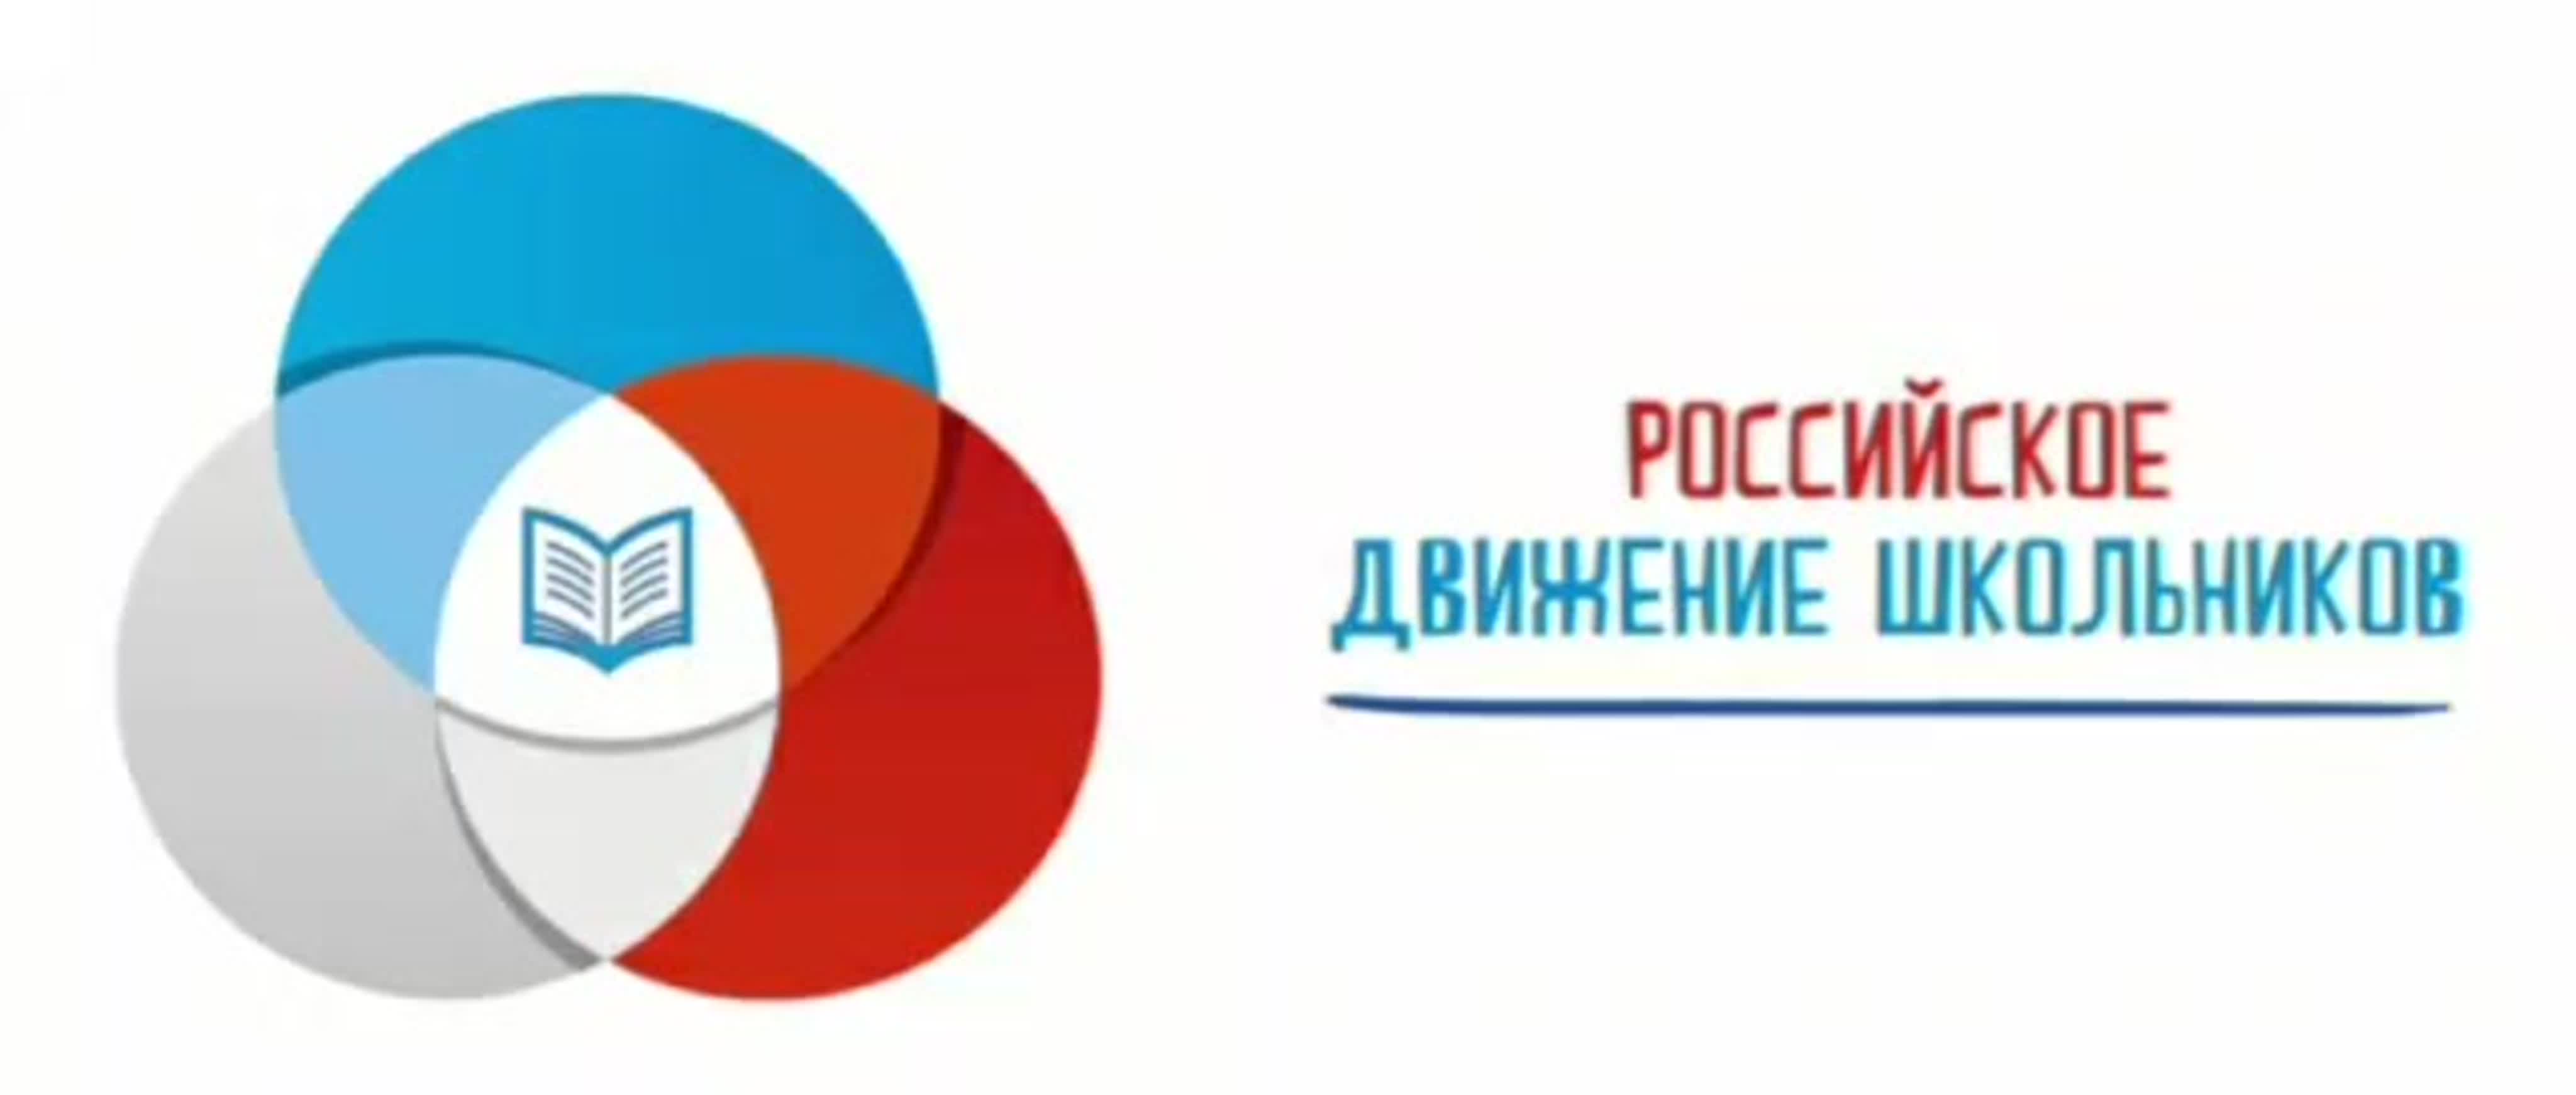 Дайджест мероприятий Российского движения школьников 14 - 20 ноября 2022г.